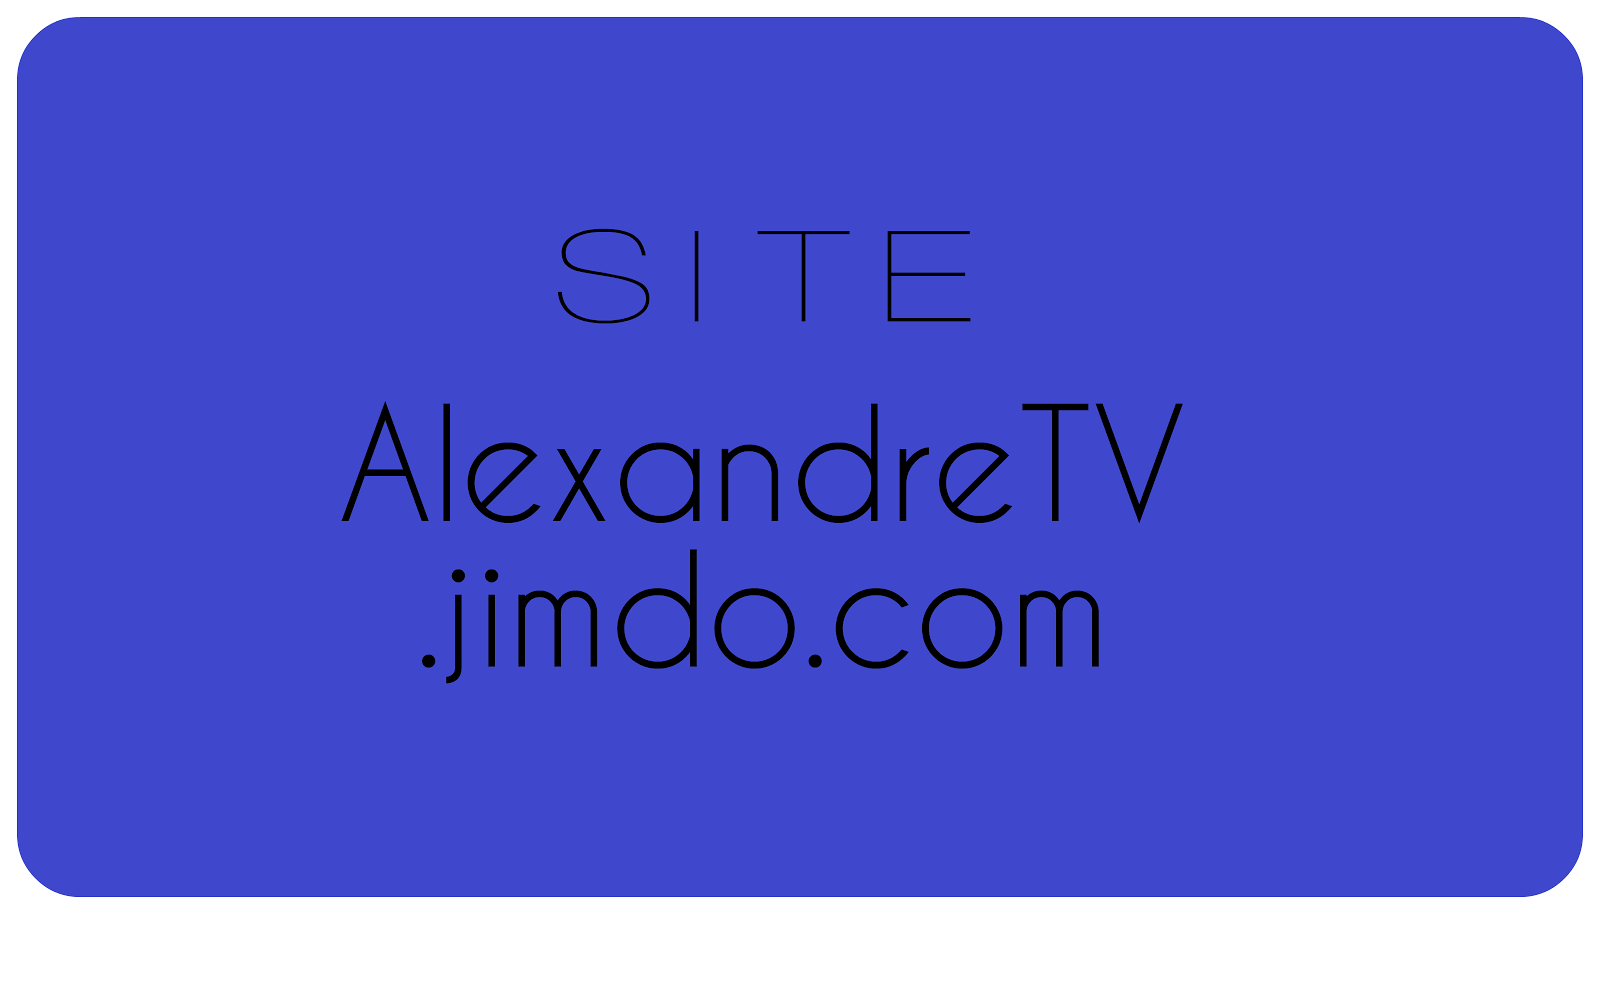 AlexandreTV.jimdo.com